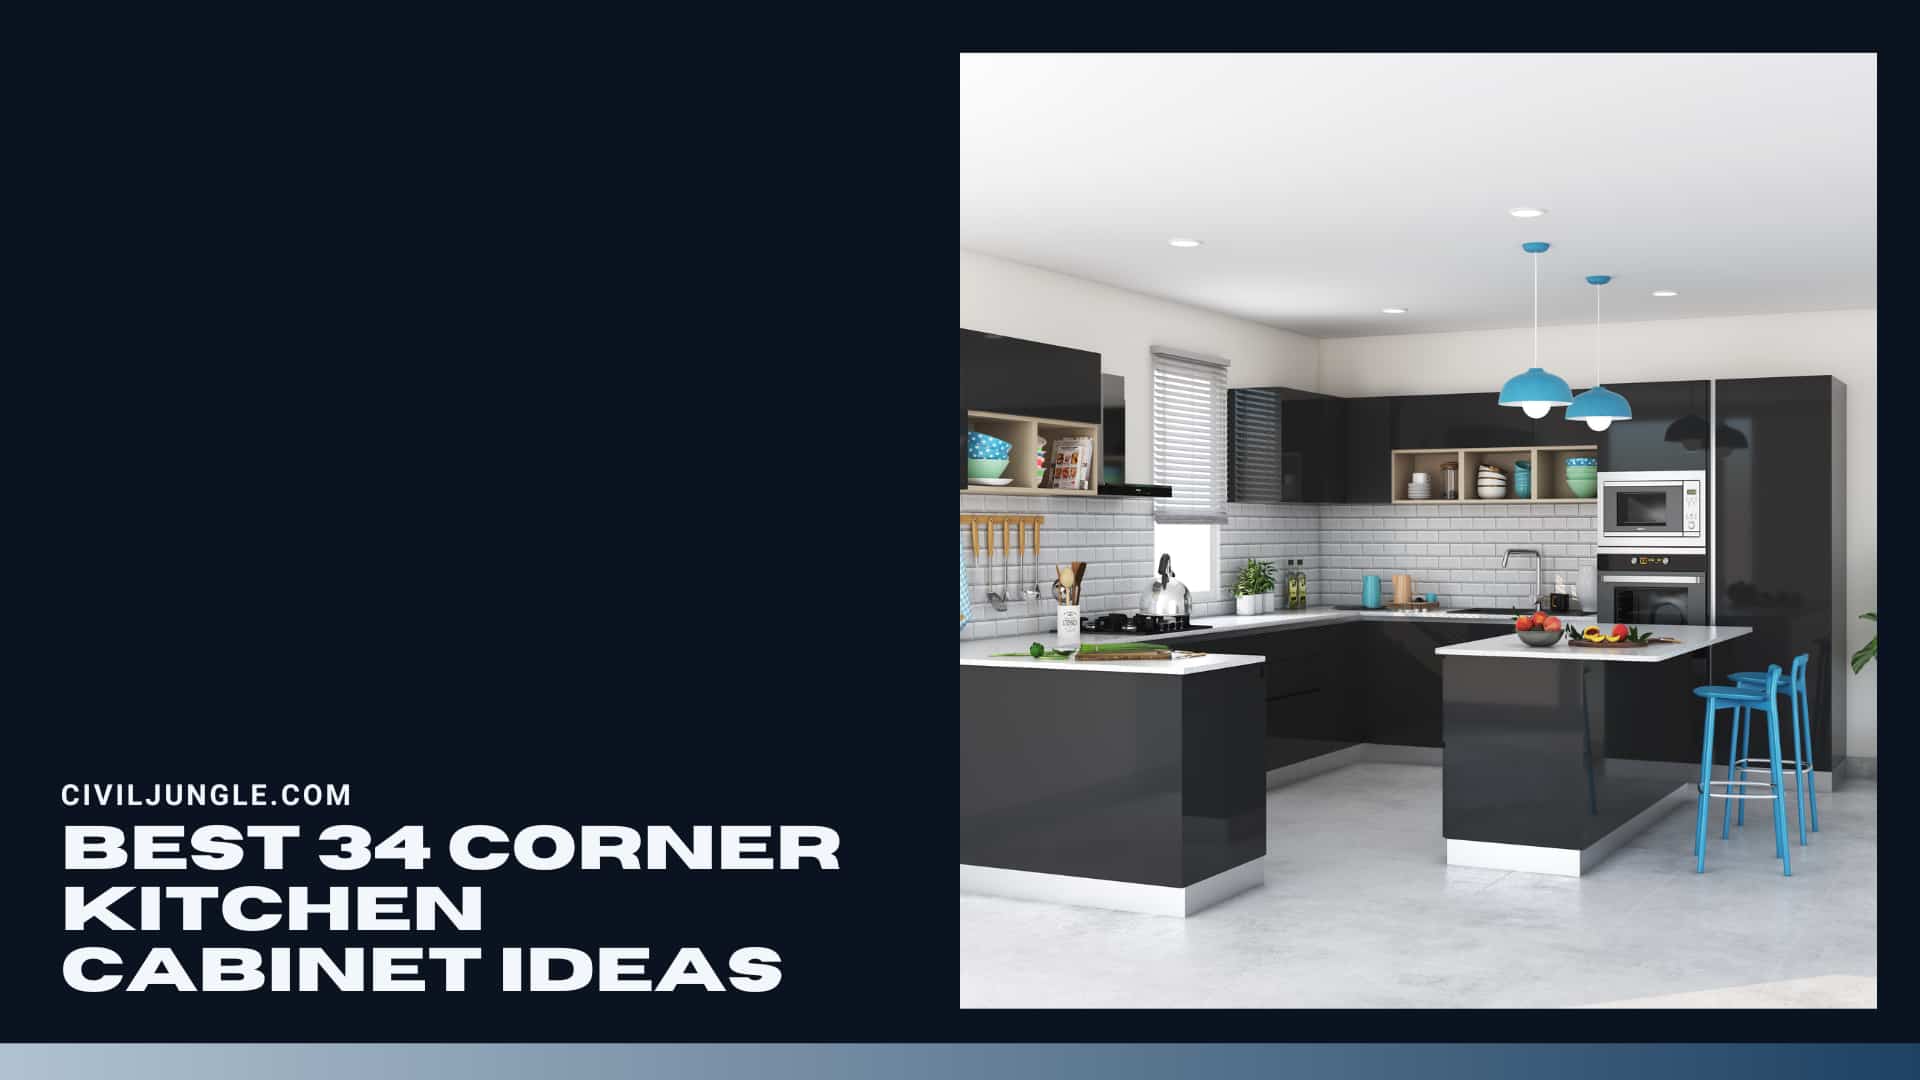 Best 34 Corner Kitchen Cabinet Ideas